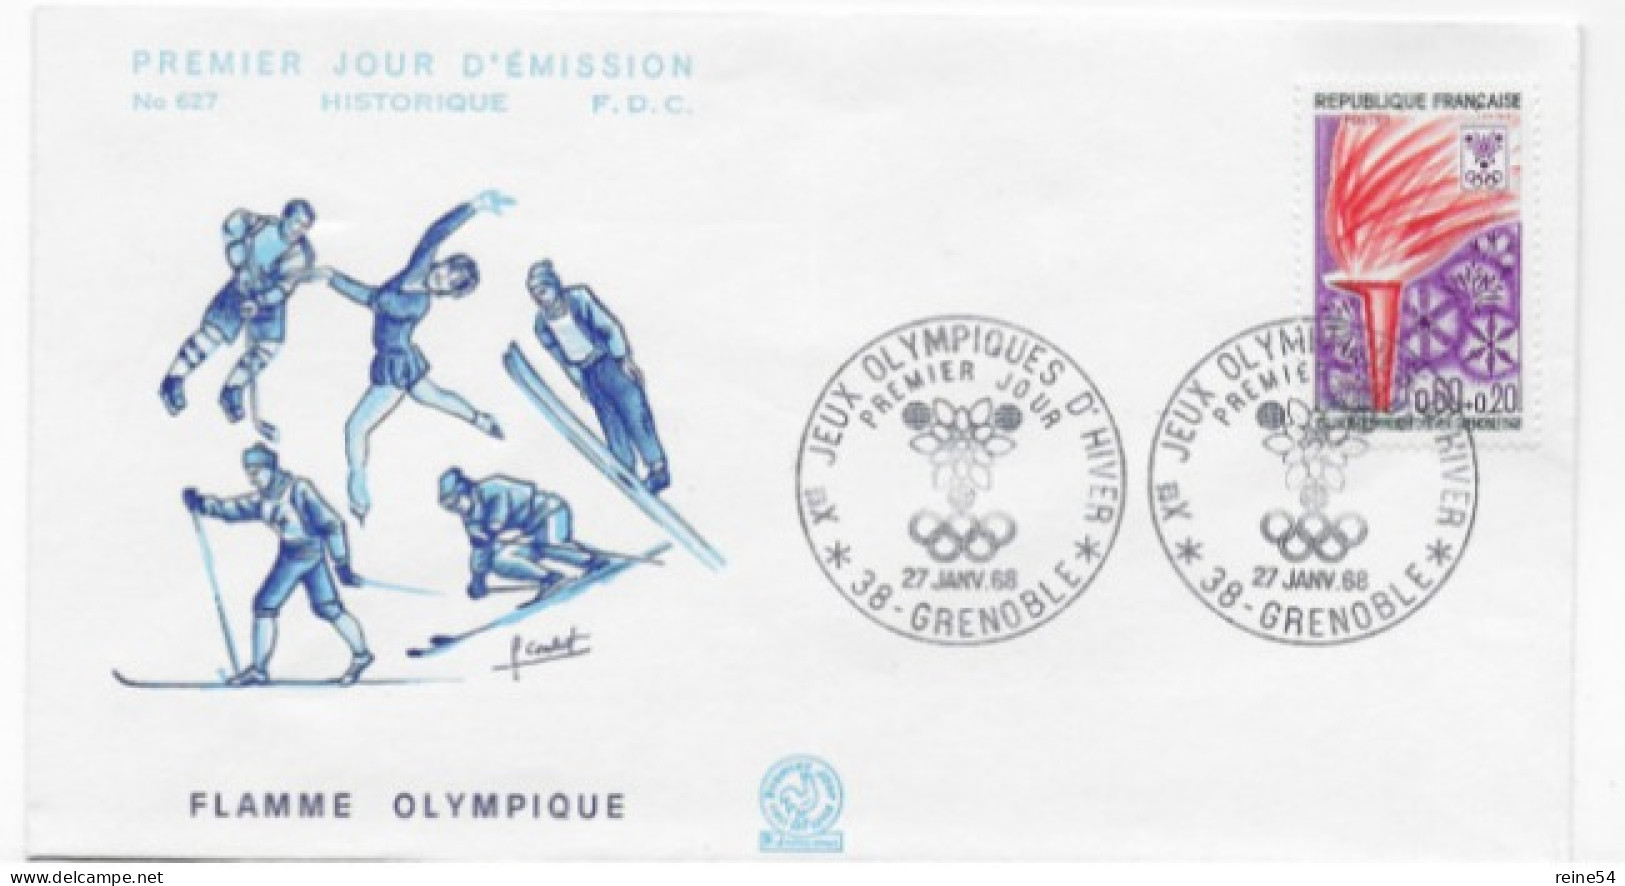 Enveloppe Premier Jour- Xe Jeux Olympiques D'Hiver- FLAMME OLYMPIQUE 27 Janv 1968 Grenoble (38) F.D.C. 627 N°1545 - 1960-1969